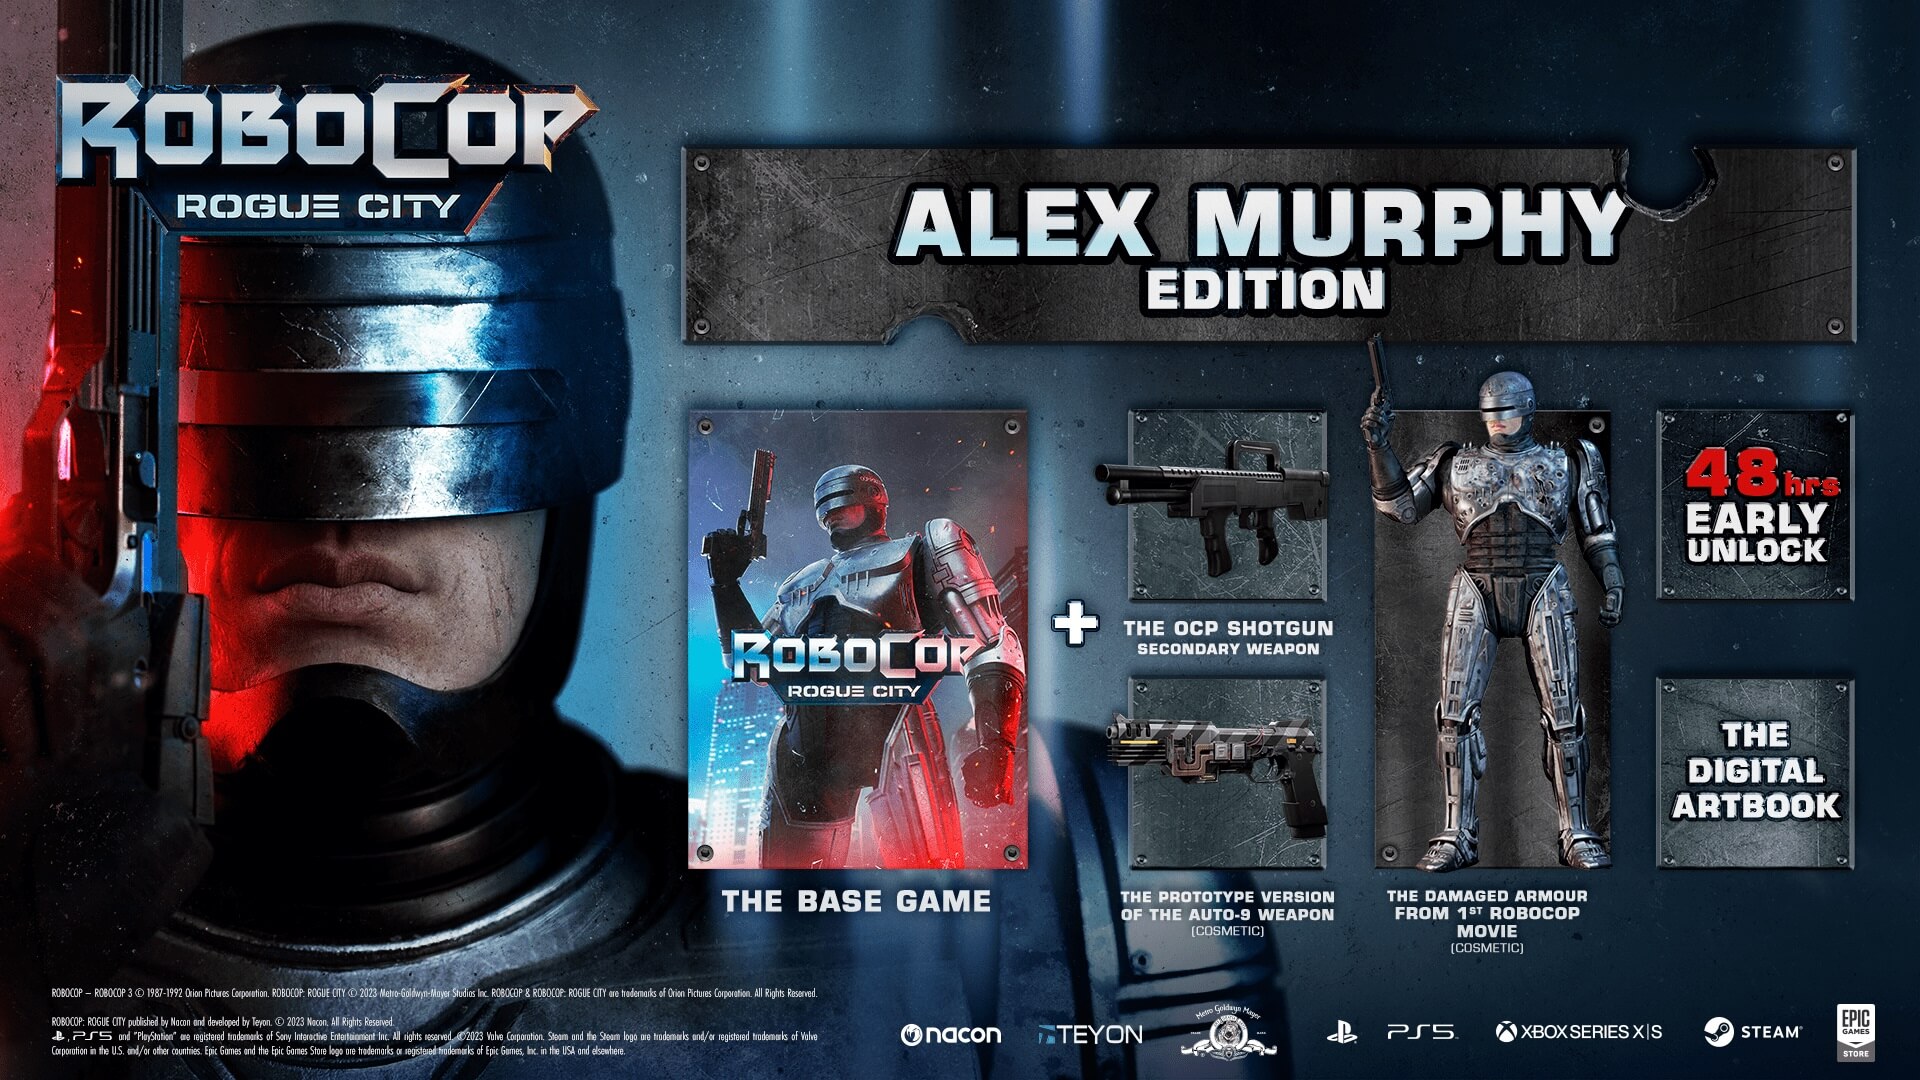 [$ 26.81] Robocop: Rogue City Alex Murphy Edition Steam CD Key